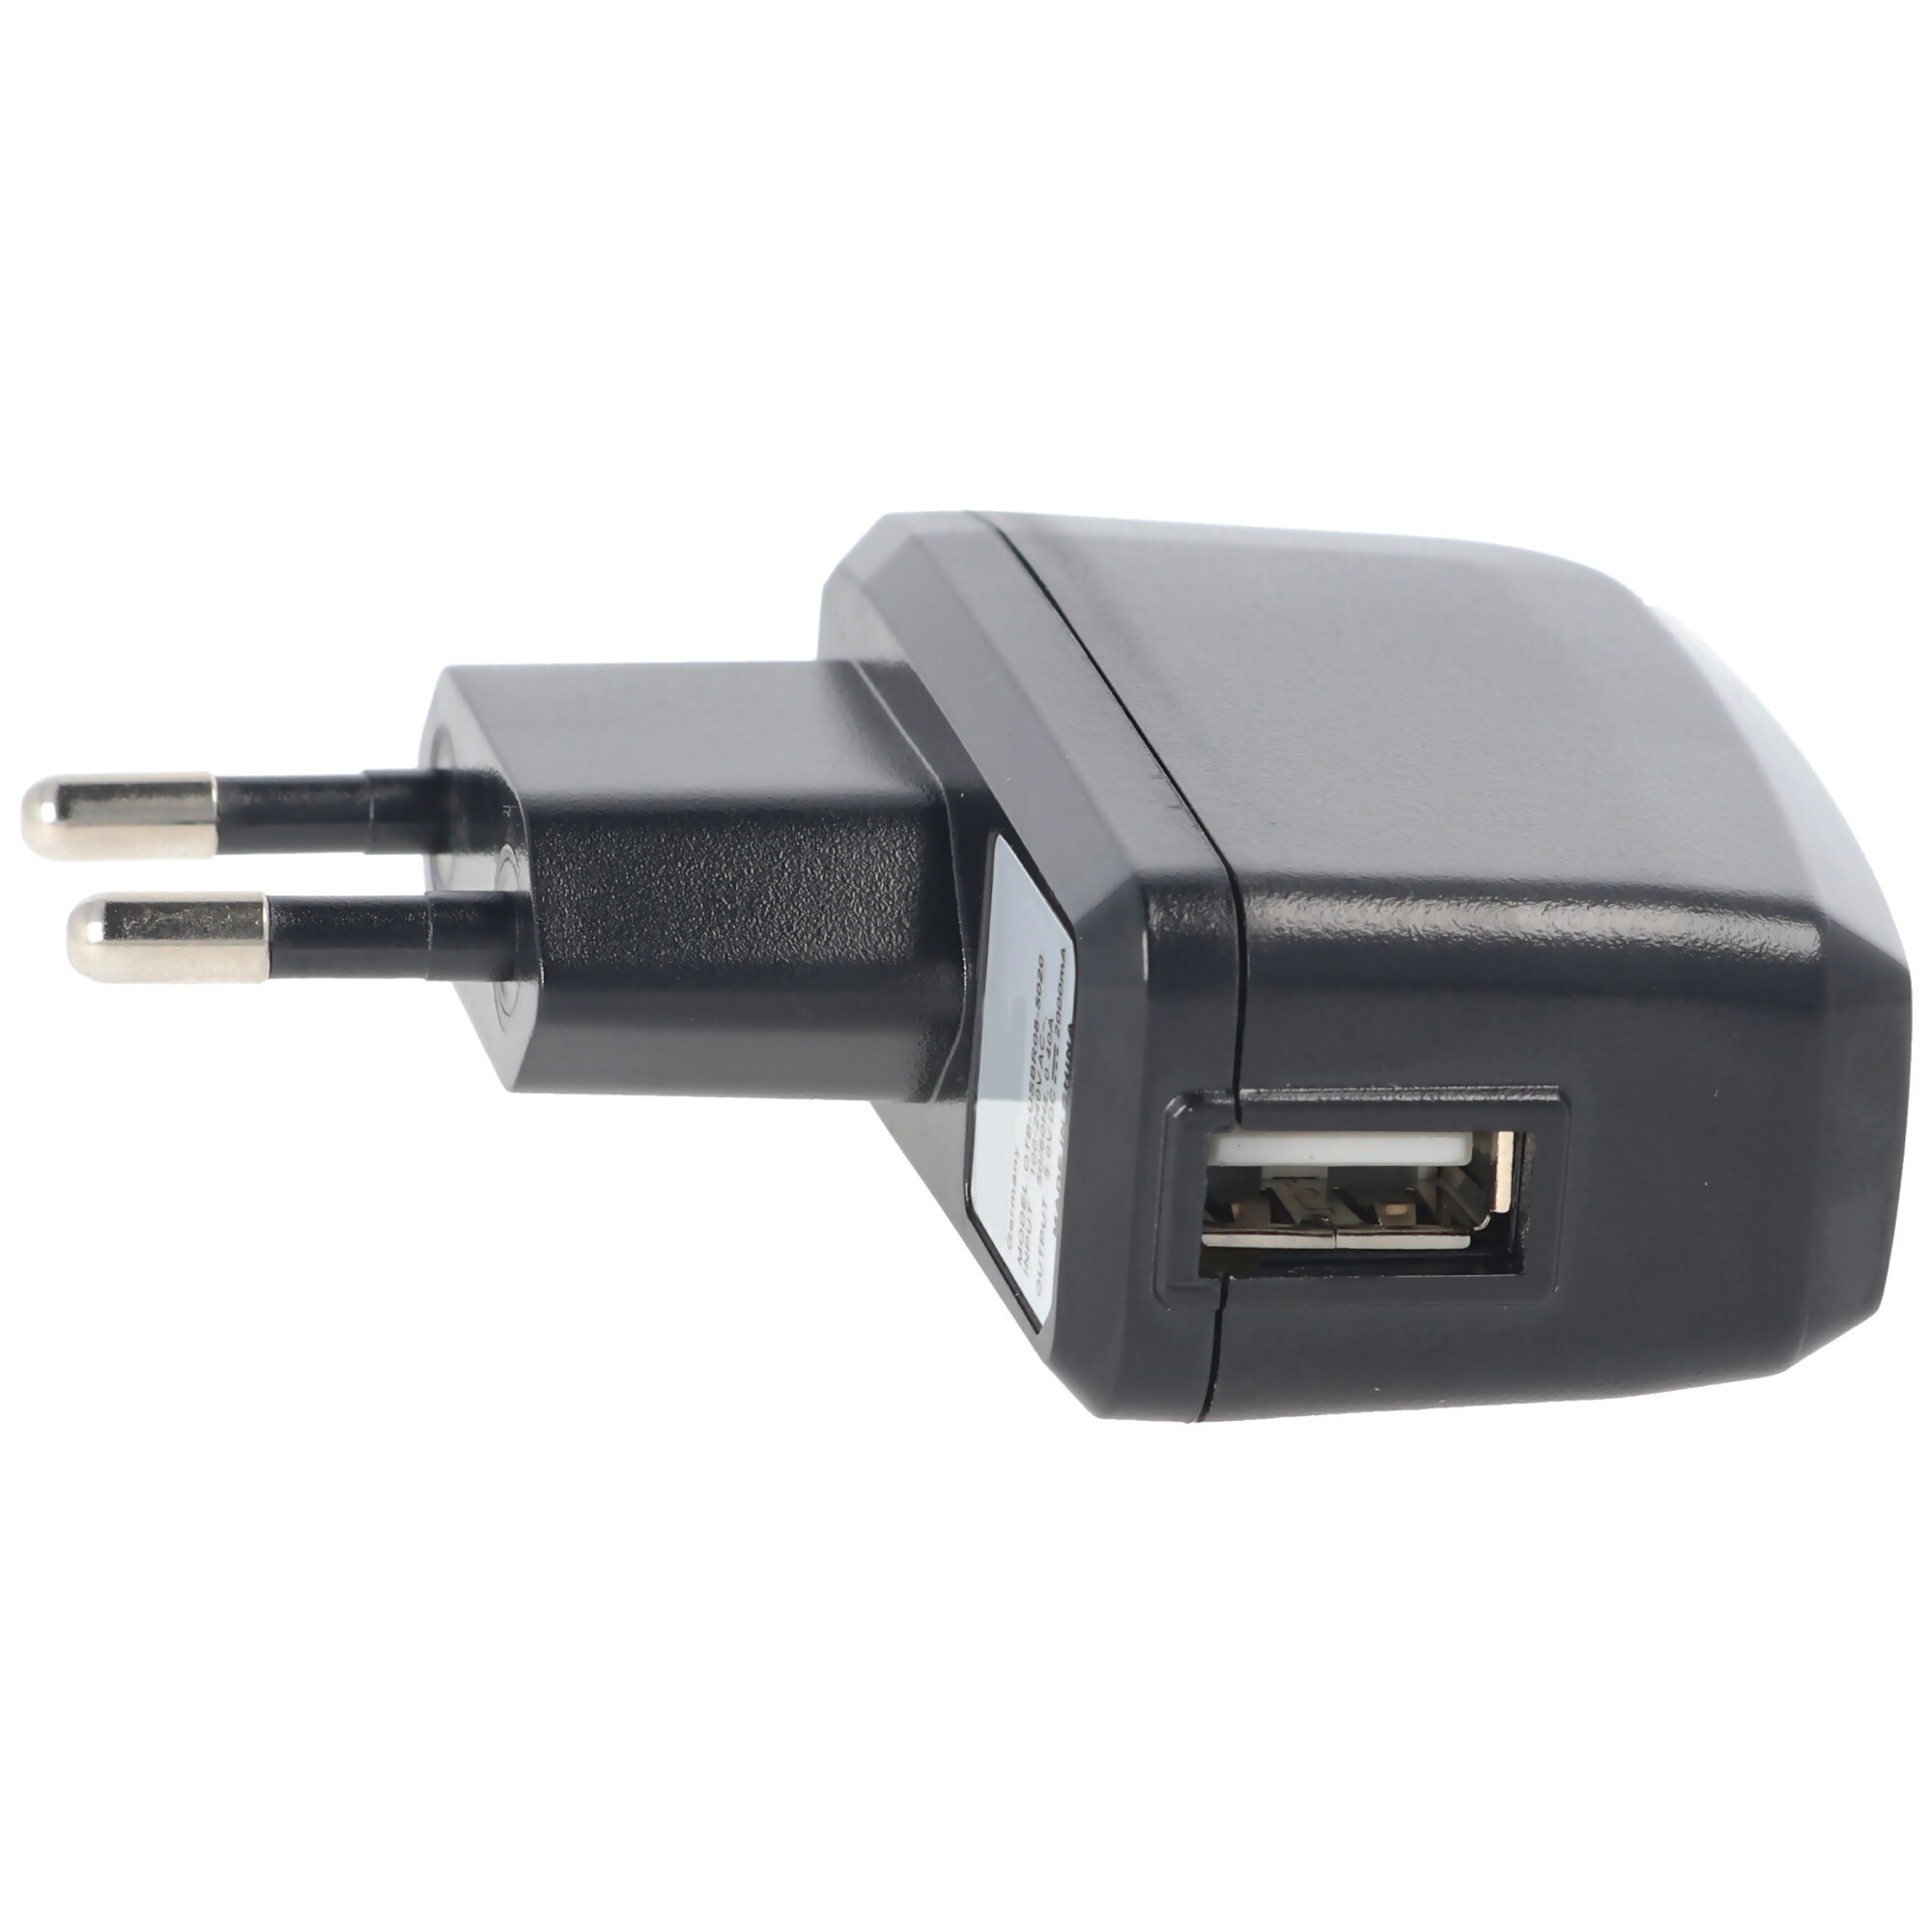 Micro USB Netzteil Ladegerät 2500mA geeignet für alle Handys Smartphones Tablets Raspberry-Pi I II und III schwarz 5V DC USB Ladeadapter Steckernetzteil Charger Aplic 